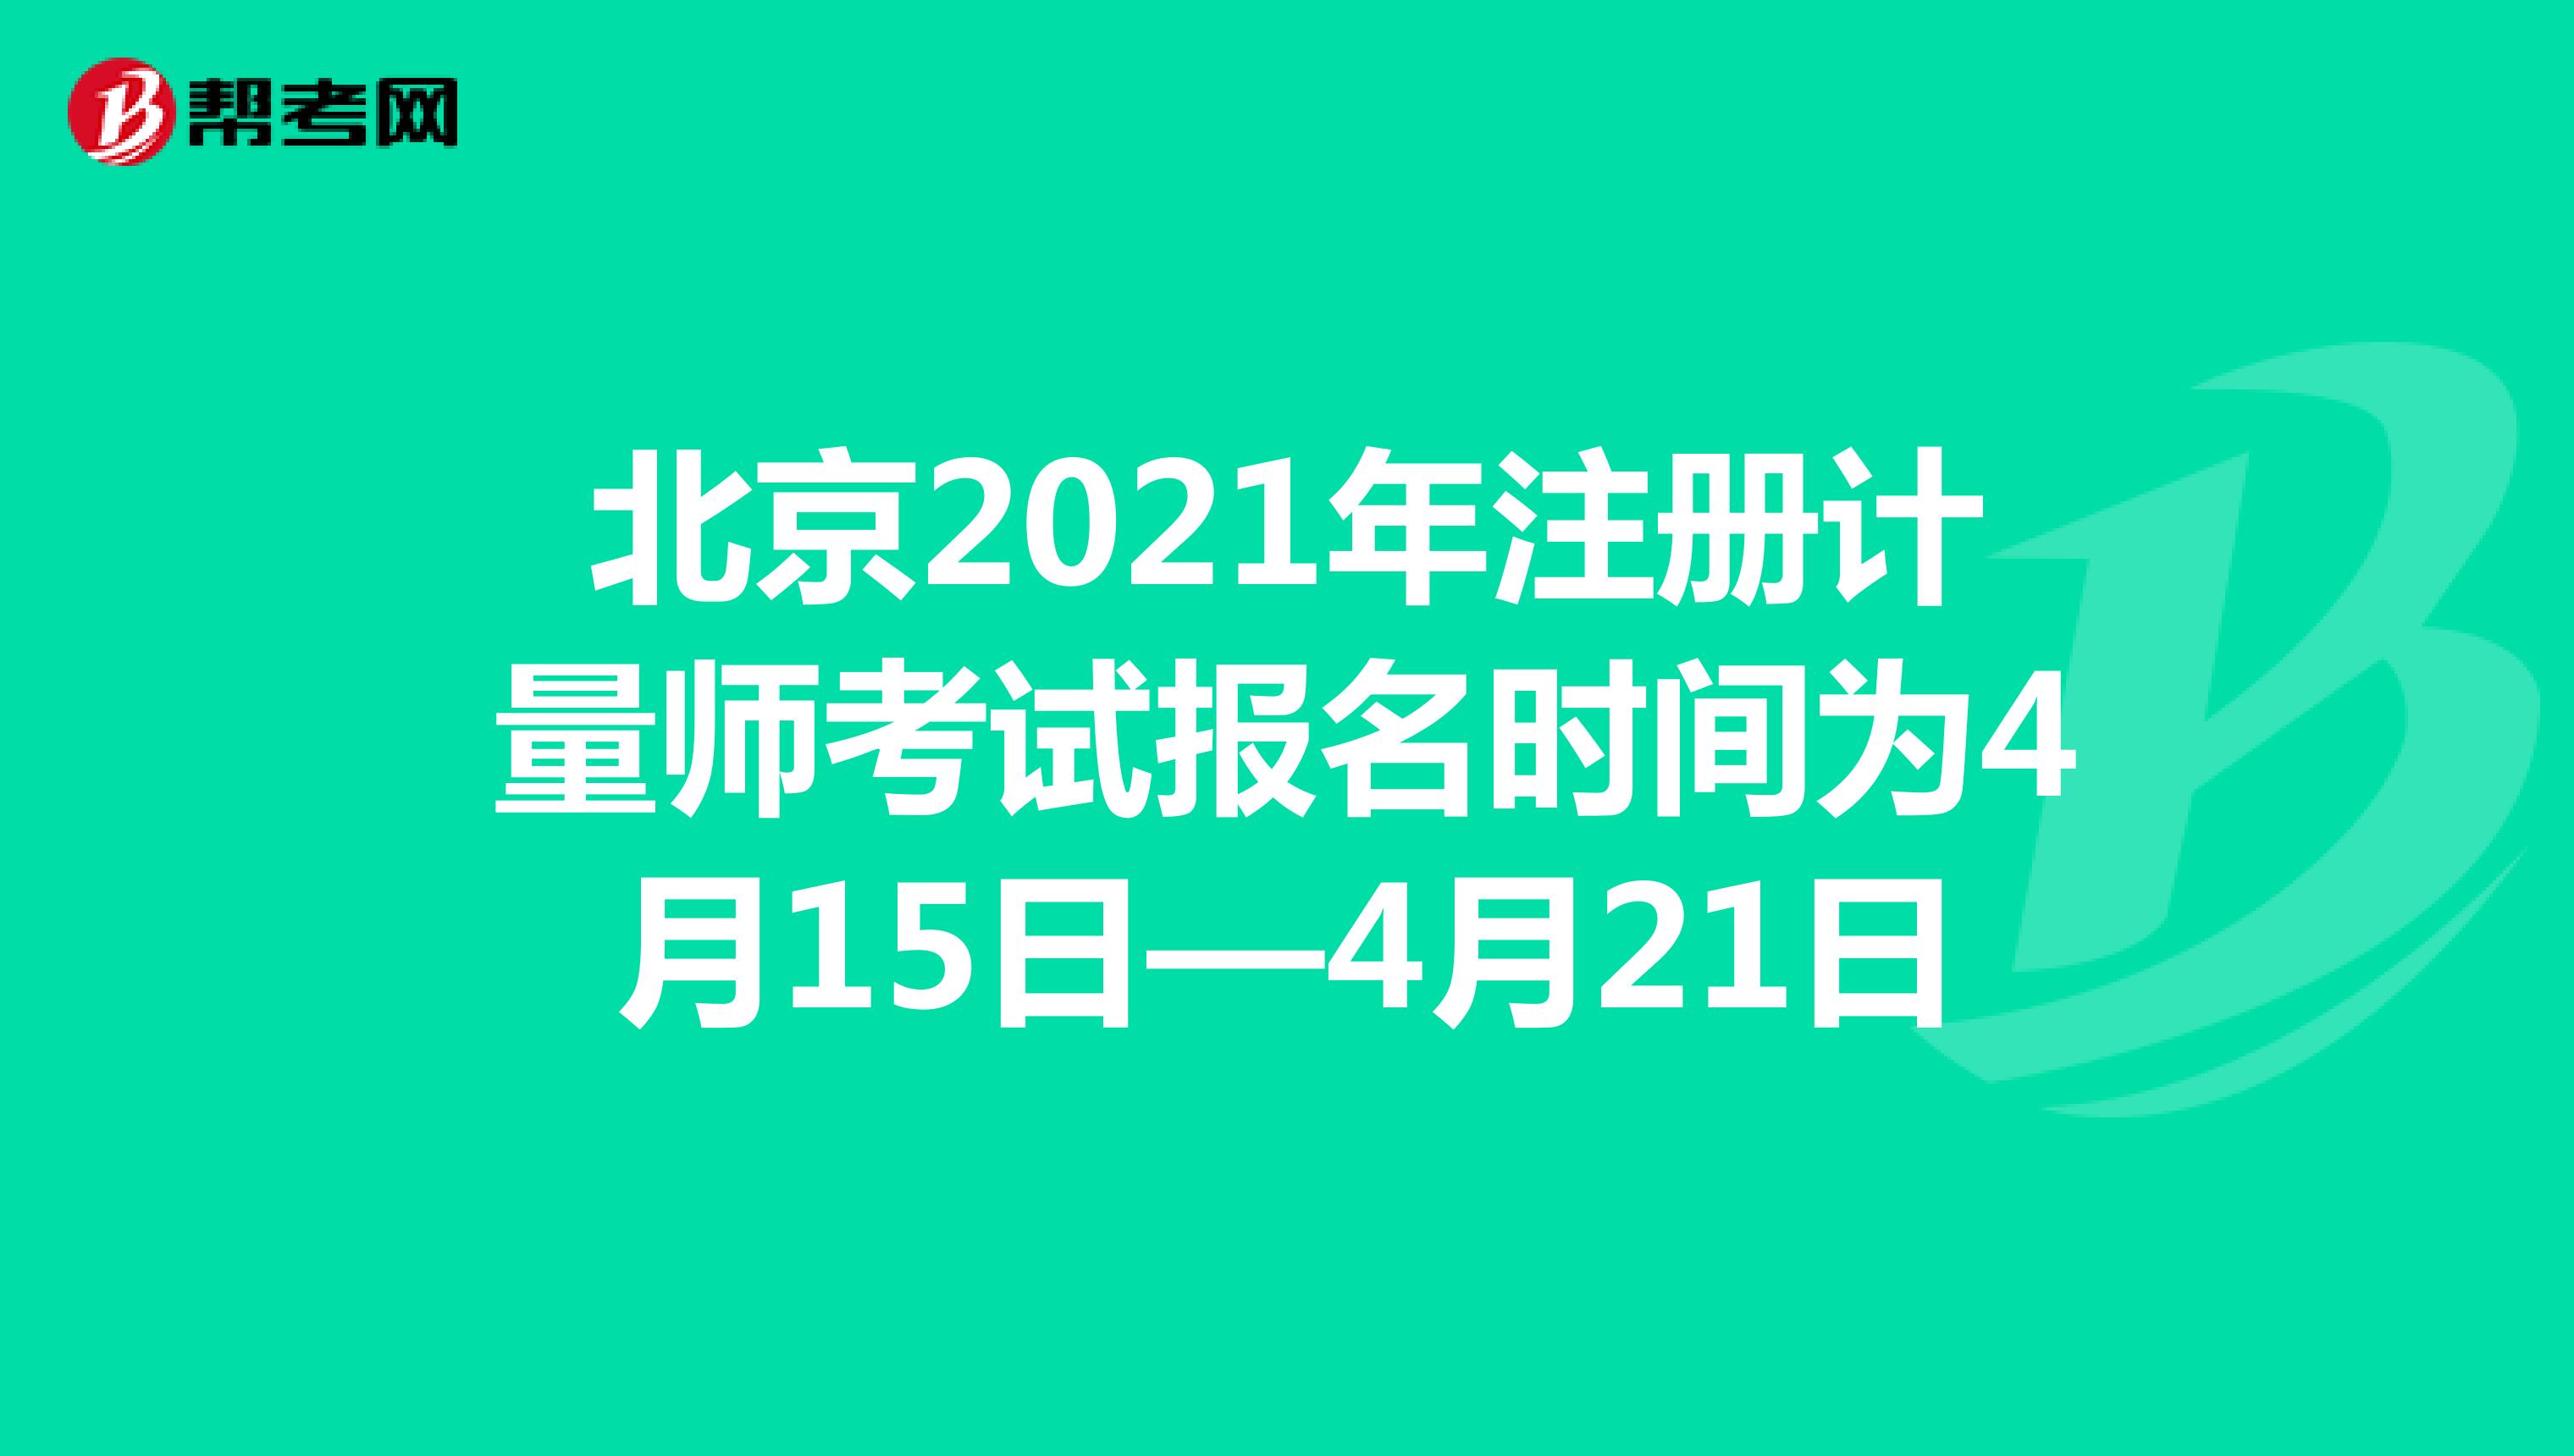 北京2021年注册计量师考试报名时间为4月15日—4月21日